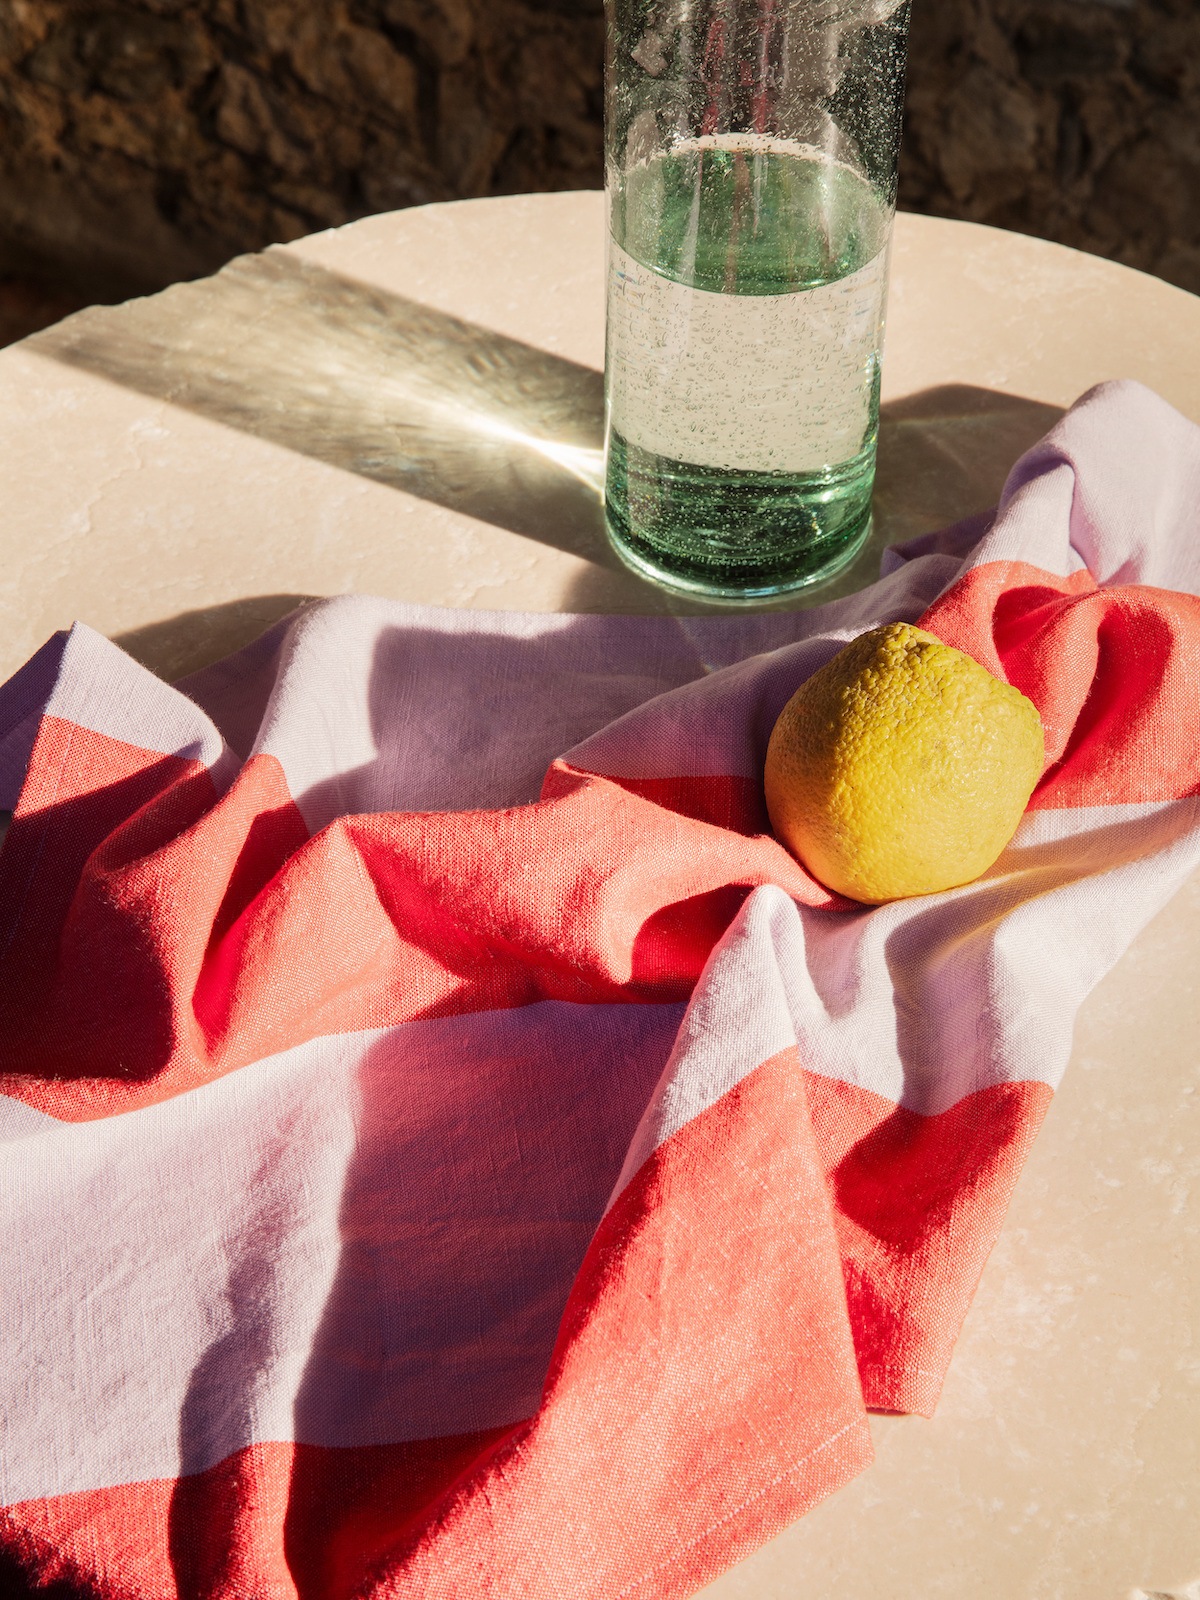 Gestreiftes Küchentuch in rosa und rot, darauf eine Zitrone. Dahinter steht eine Glaskaraffe.